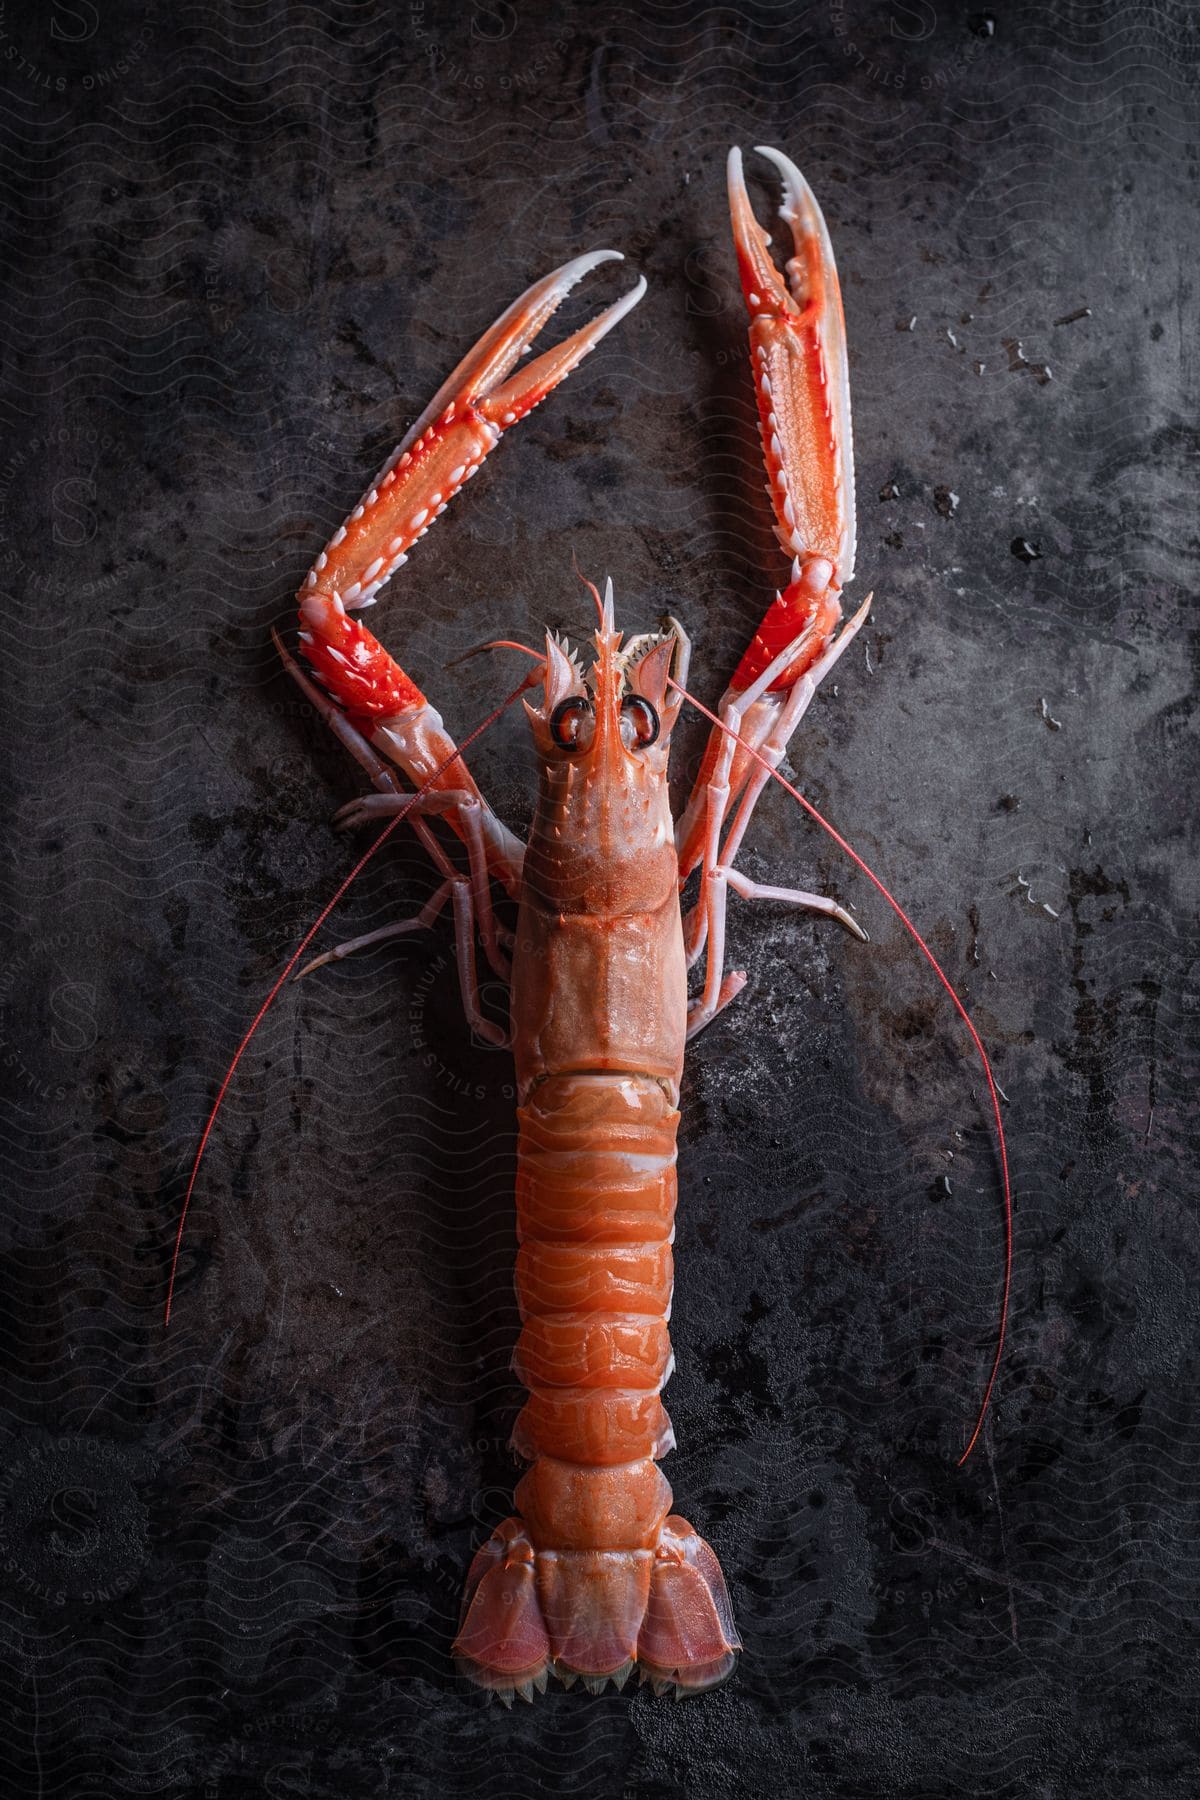 A close up image of a shrimp